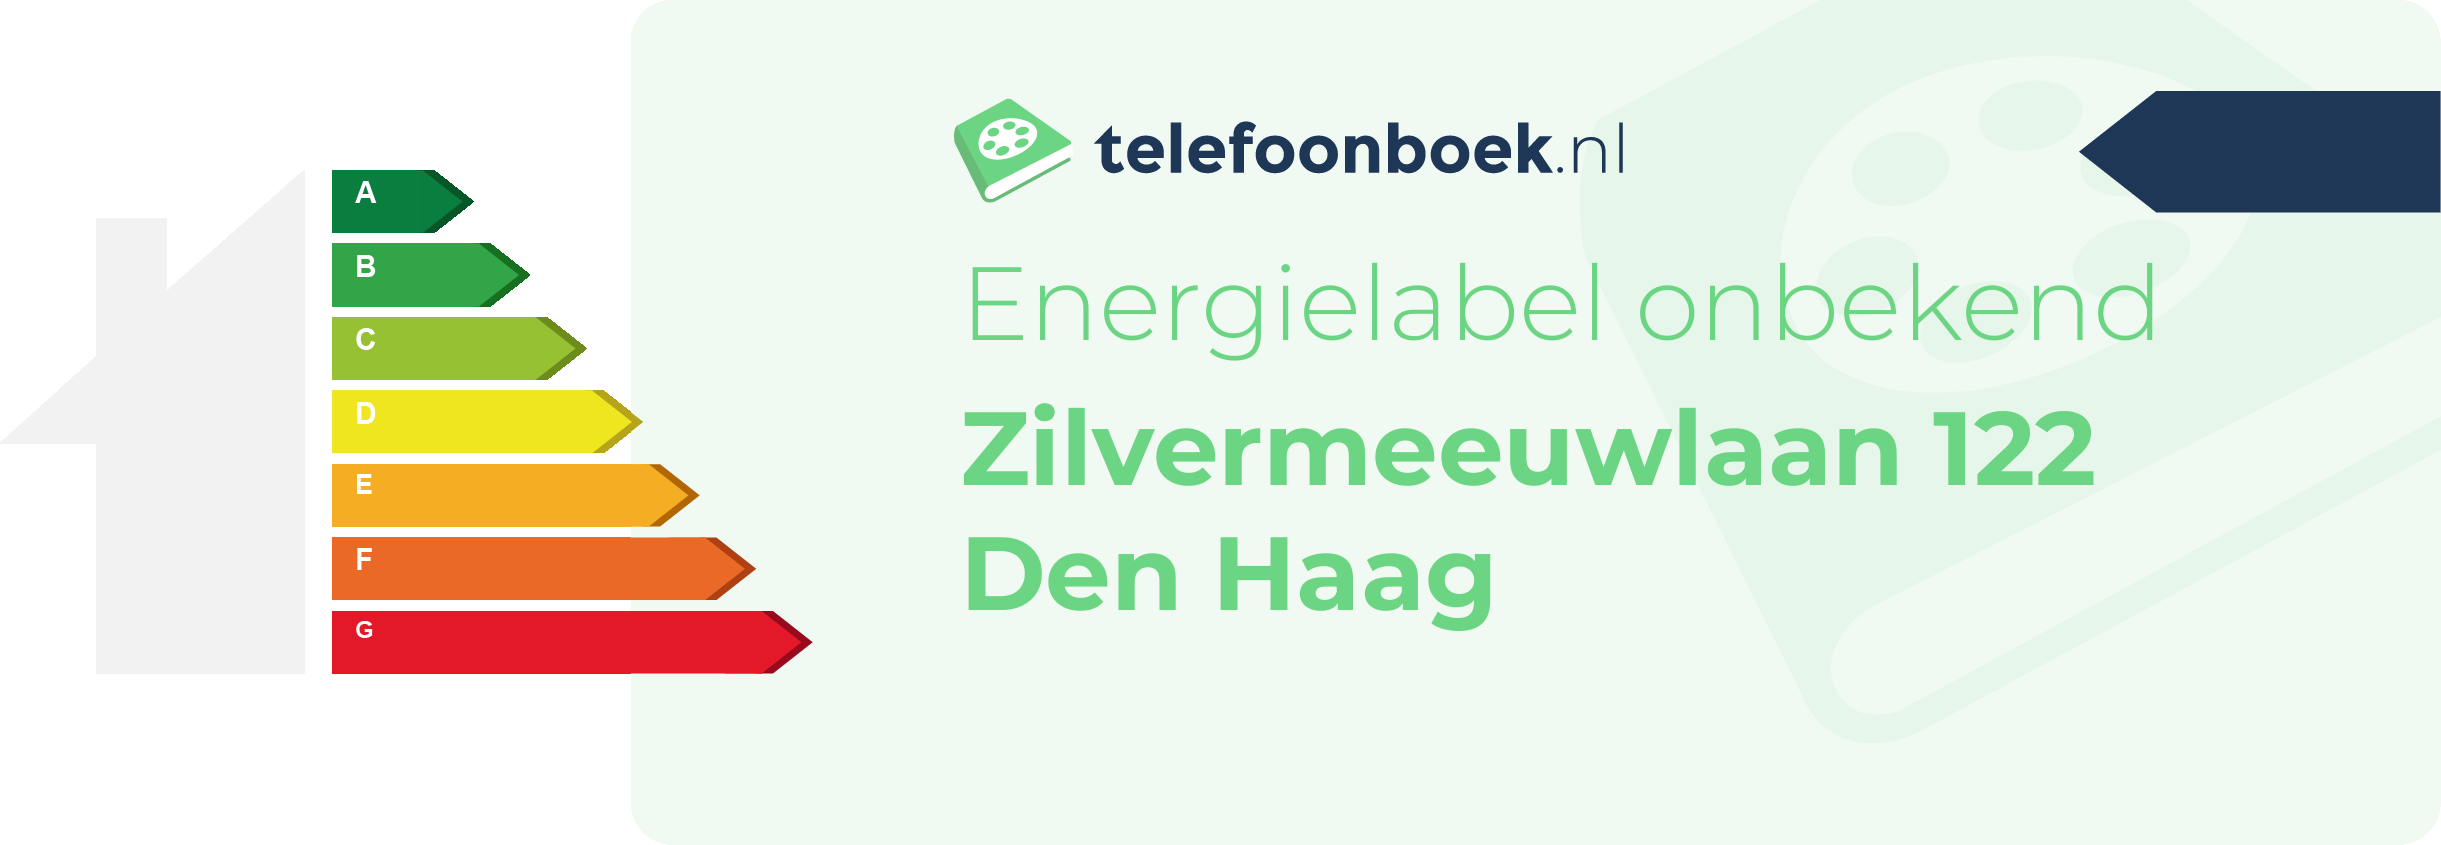 Energielabel Zilvermeeuwlaan 122 Den Haag